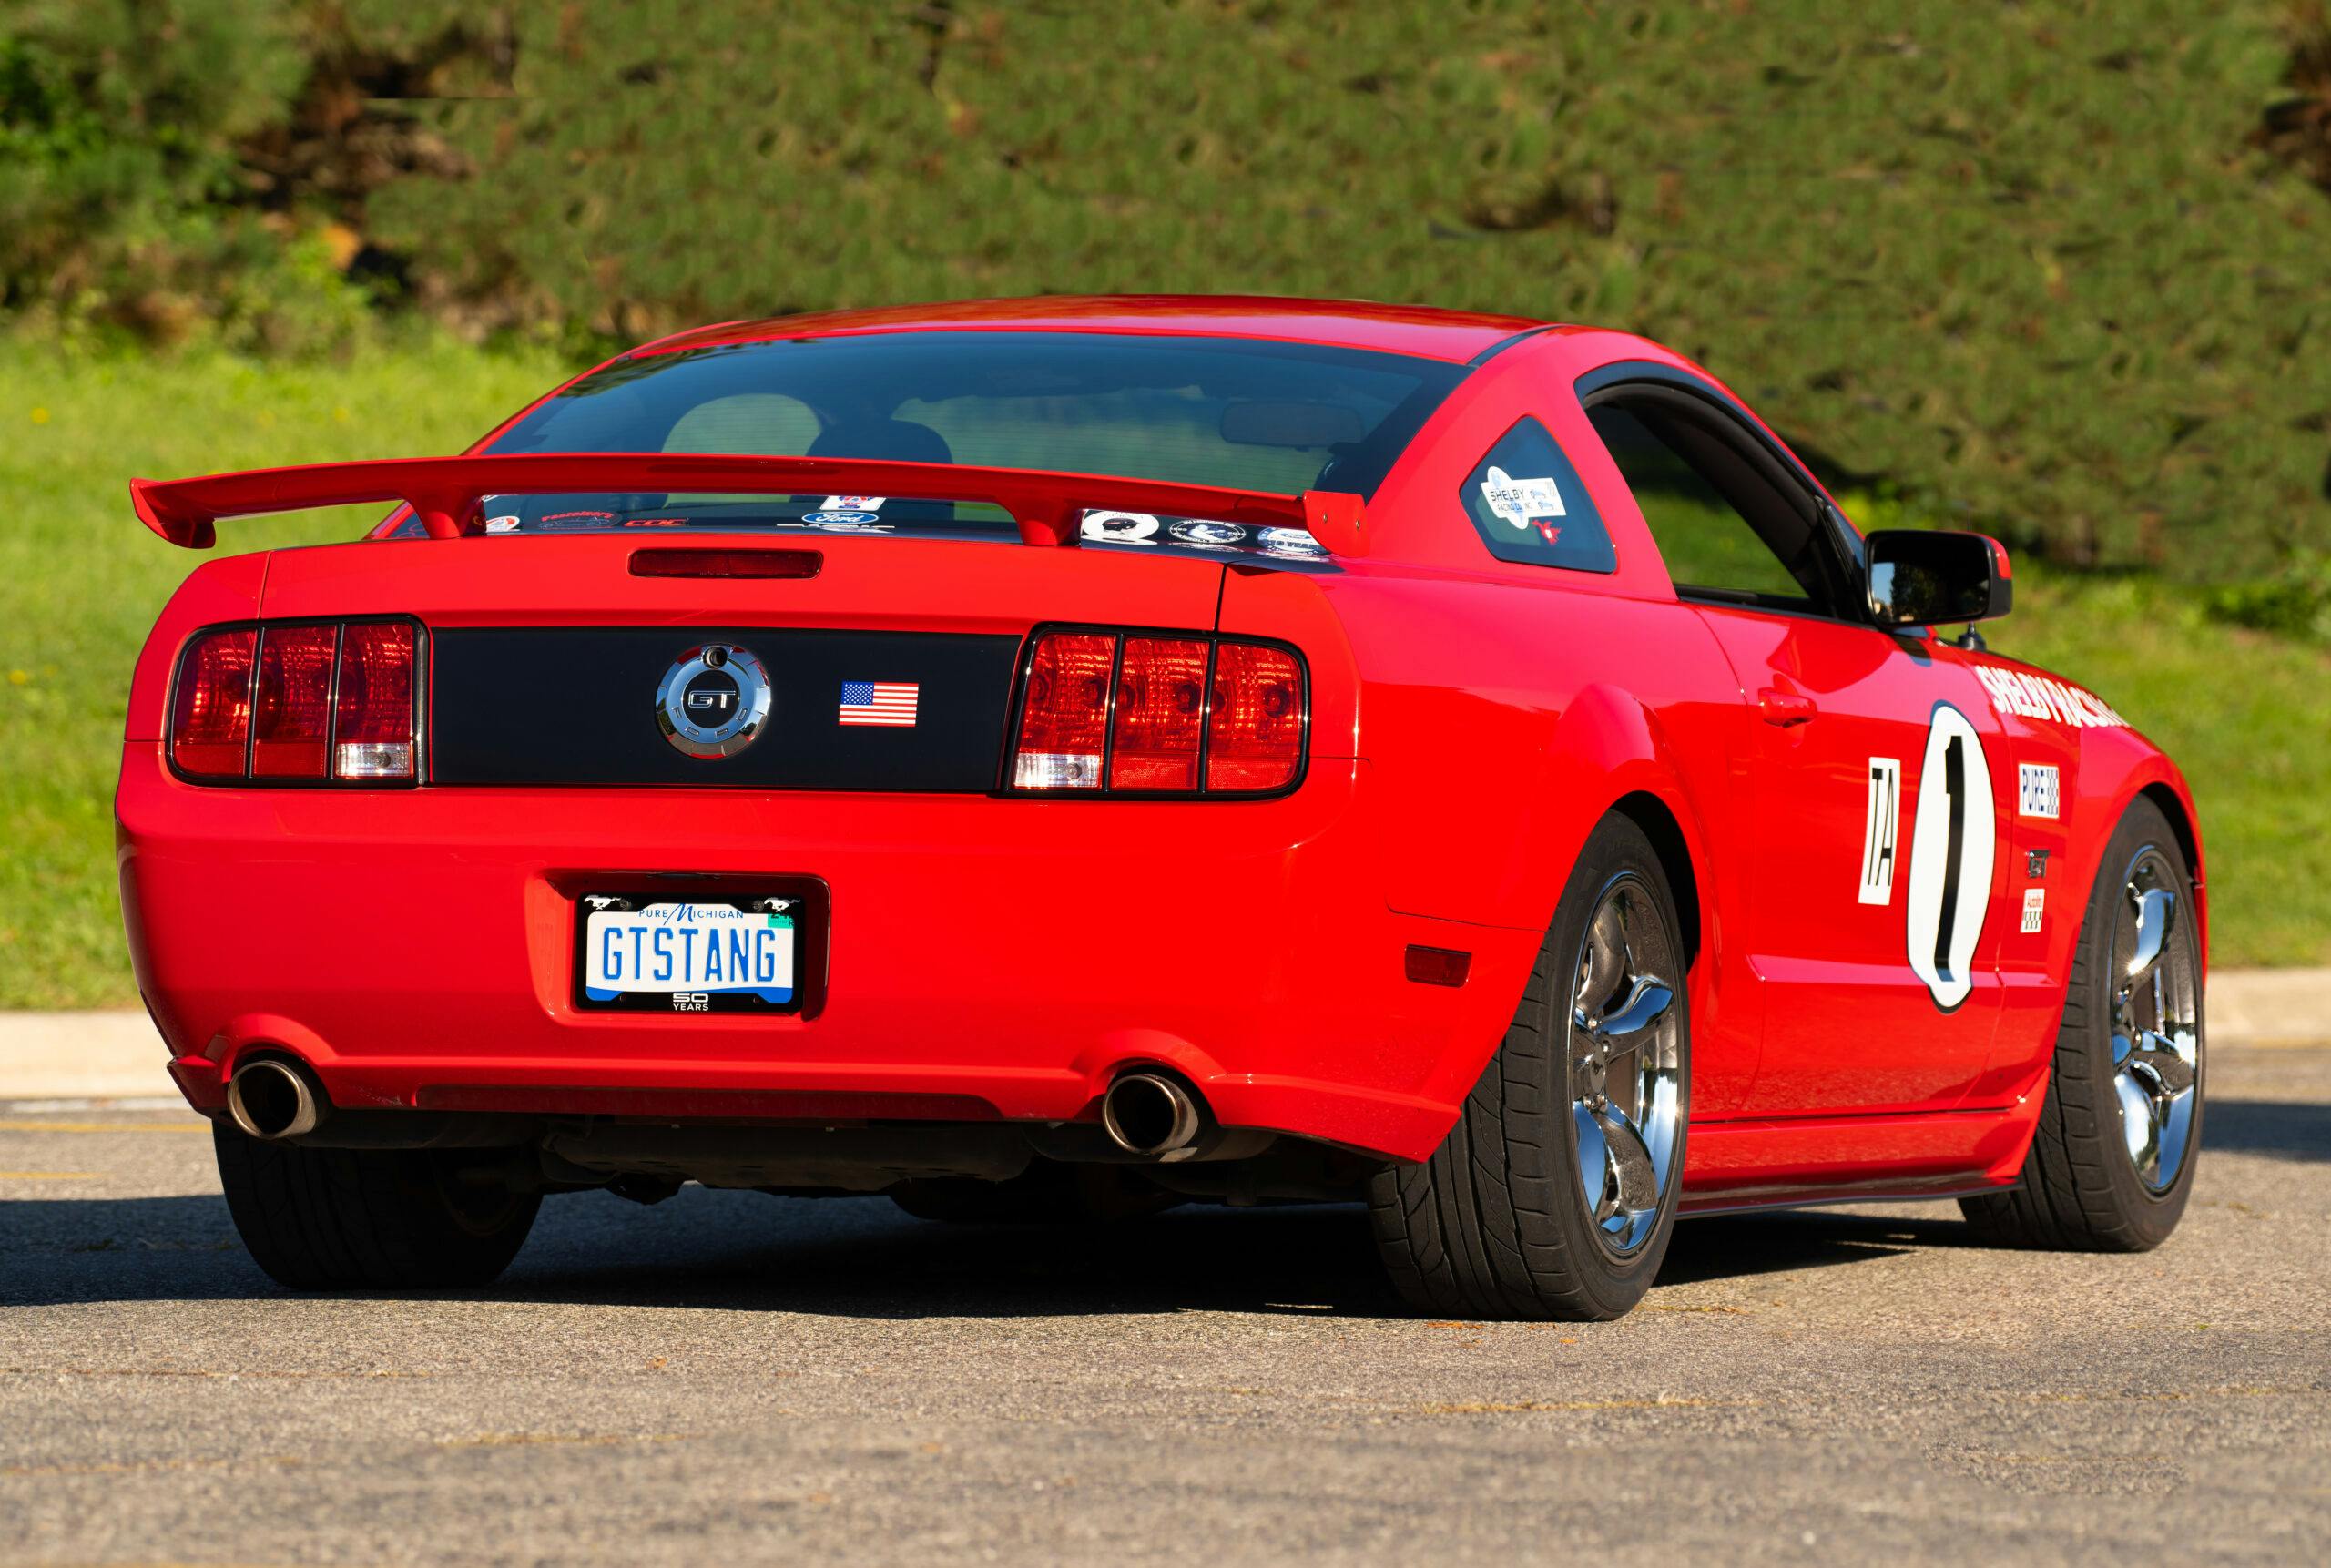 2006 Mustang GT custom livery rear three quarter